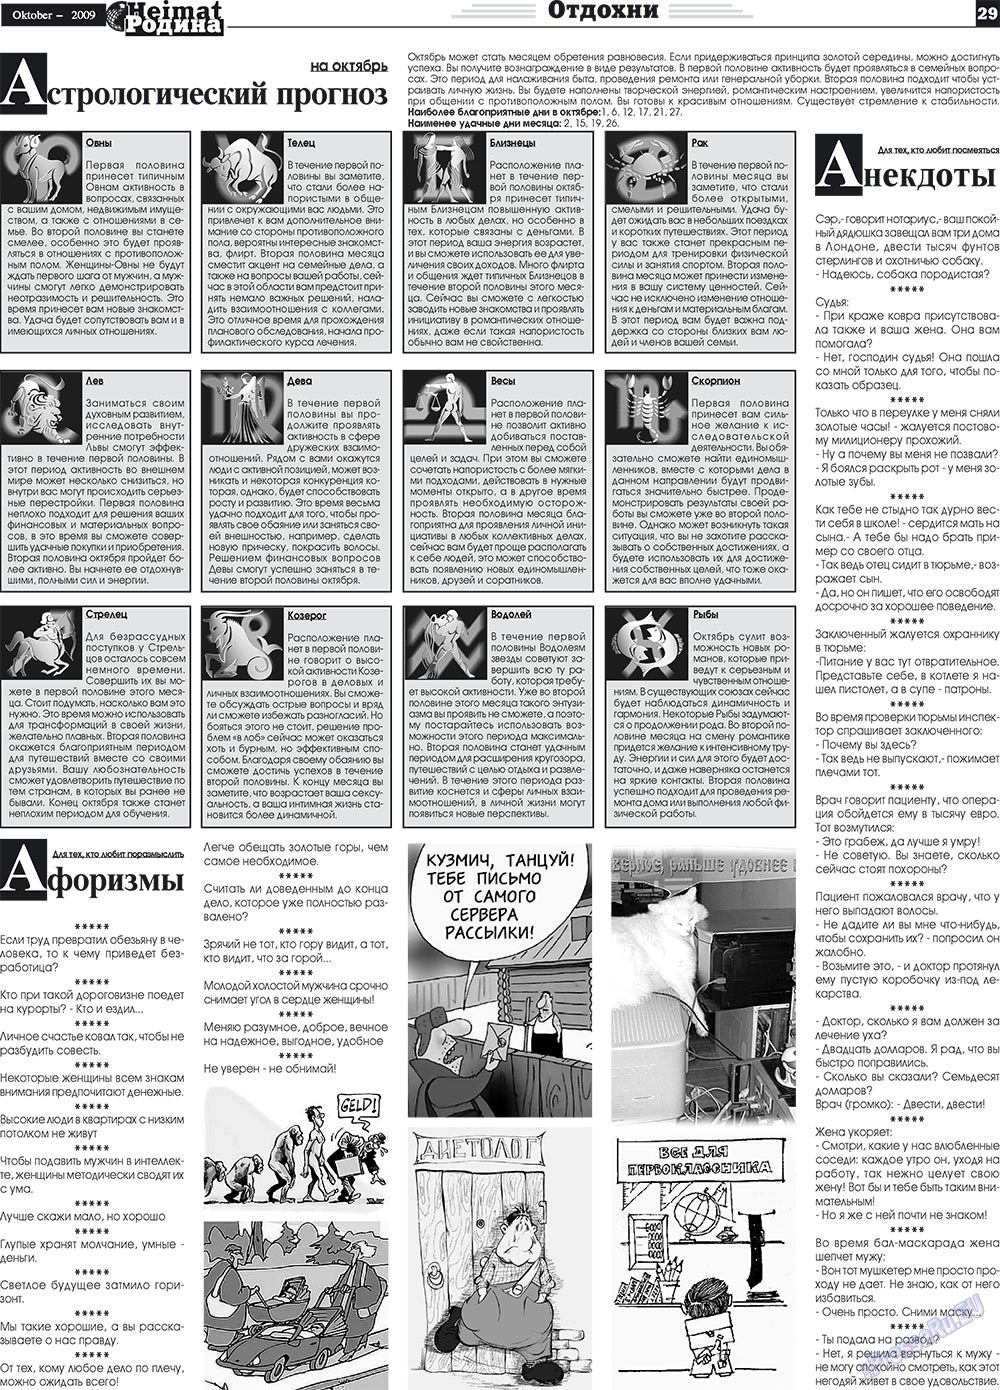 Heimat-Родина (газета). 2009 год, номер 10, стр. 29